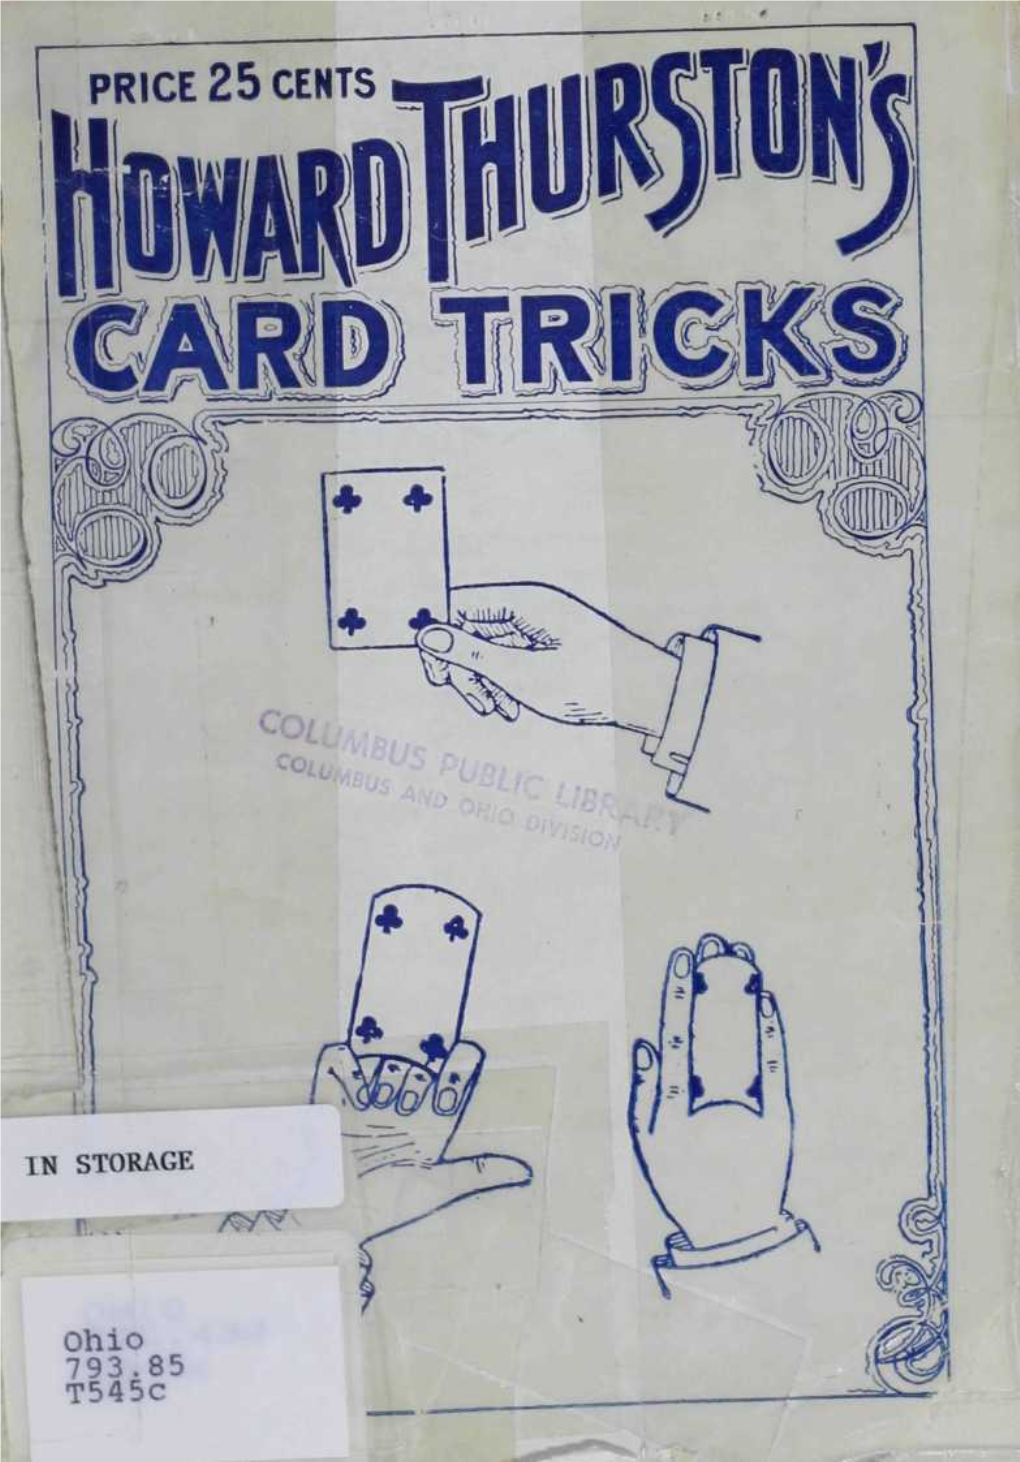 193 145 7806 Howard Thurston's CARD TRICKS